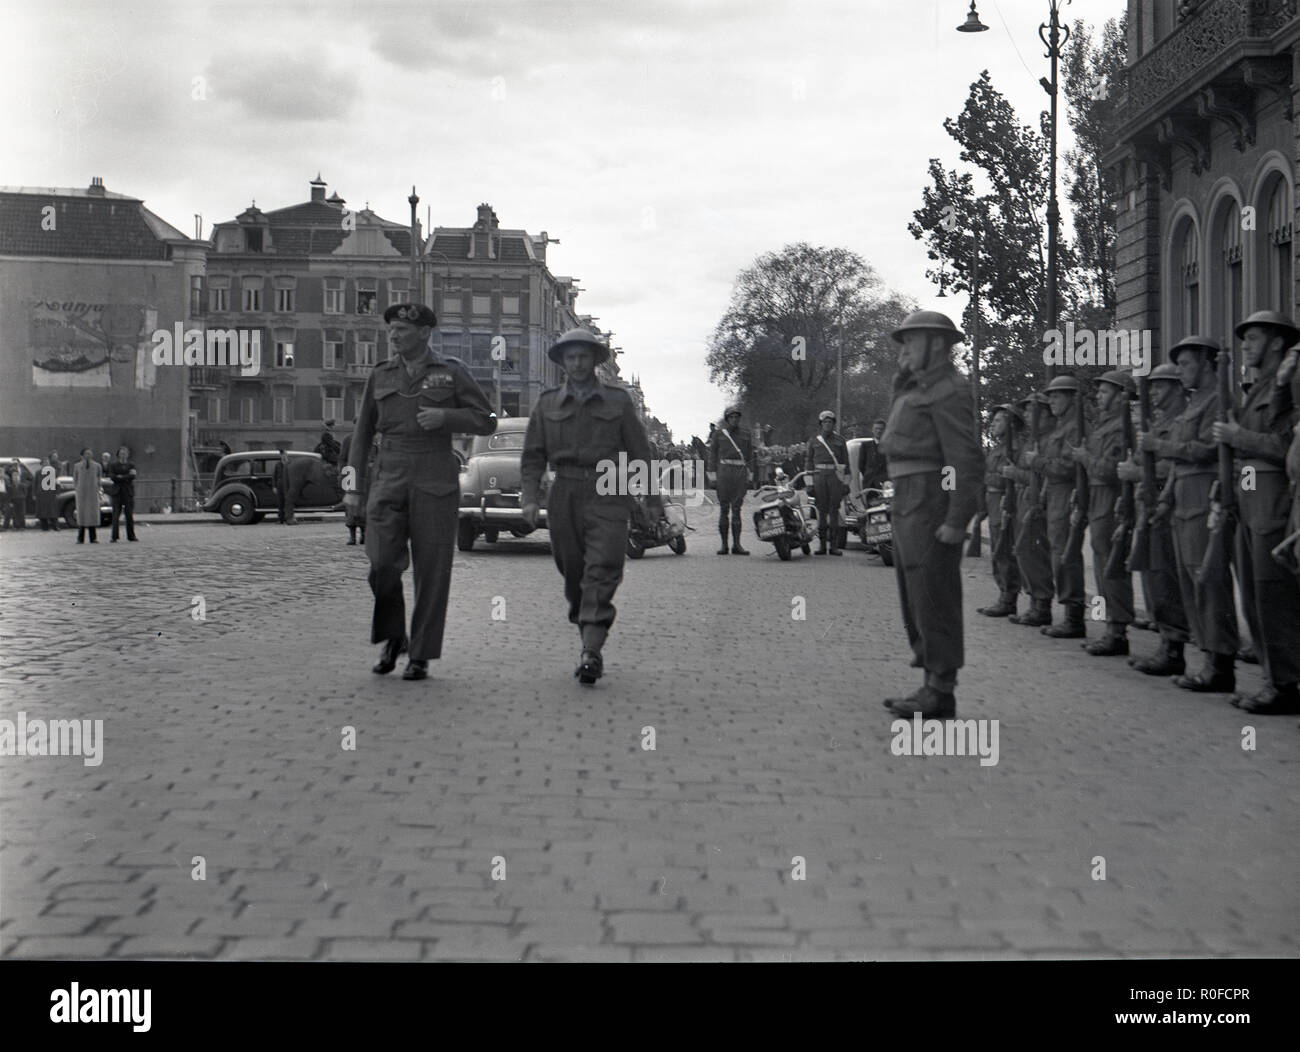 Befreiung der Stadt Apeldoorn Niederlande 17. April 1945 - Befreiung der Stadt Apeldoorn, Niederlande, 17. April 1945 - Allgemein/Fieldmarshal Montgomery Stockfoto